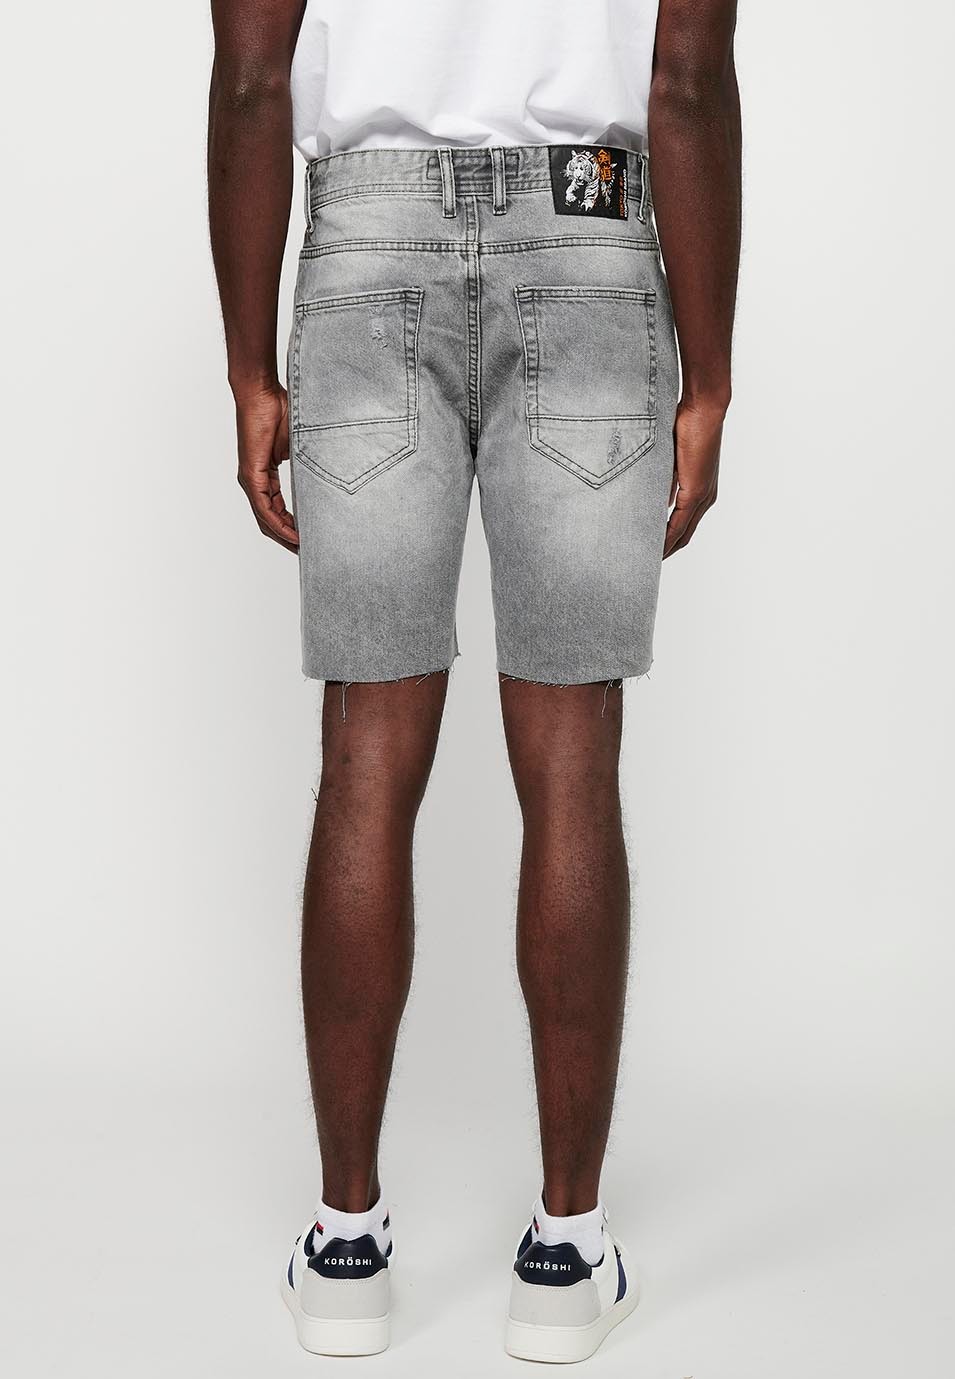 Comfort Fit Denim Bermuda Shorts, gray color for men